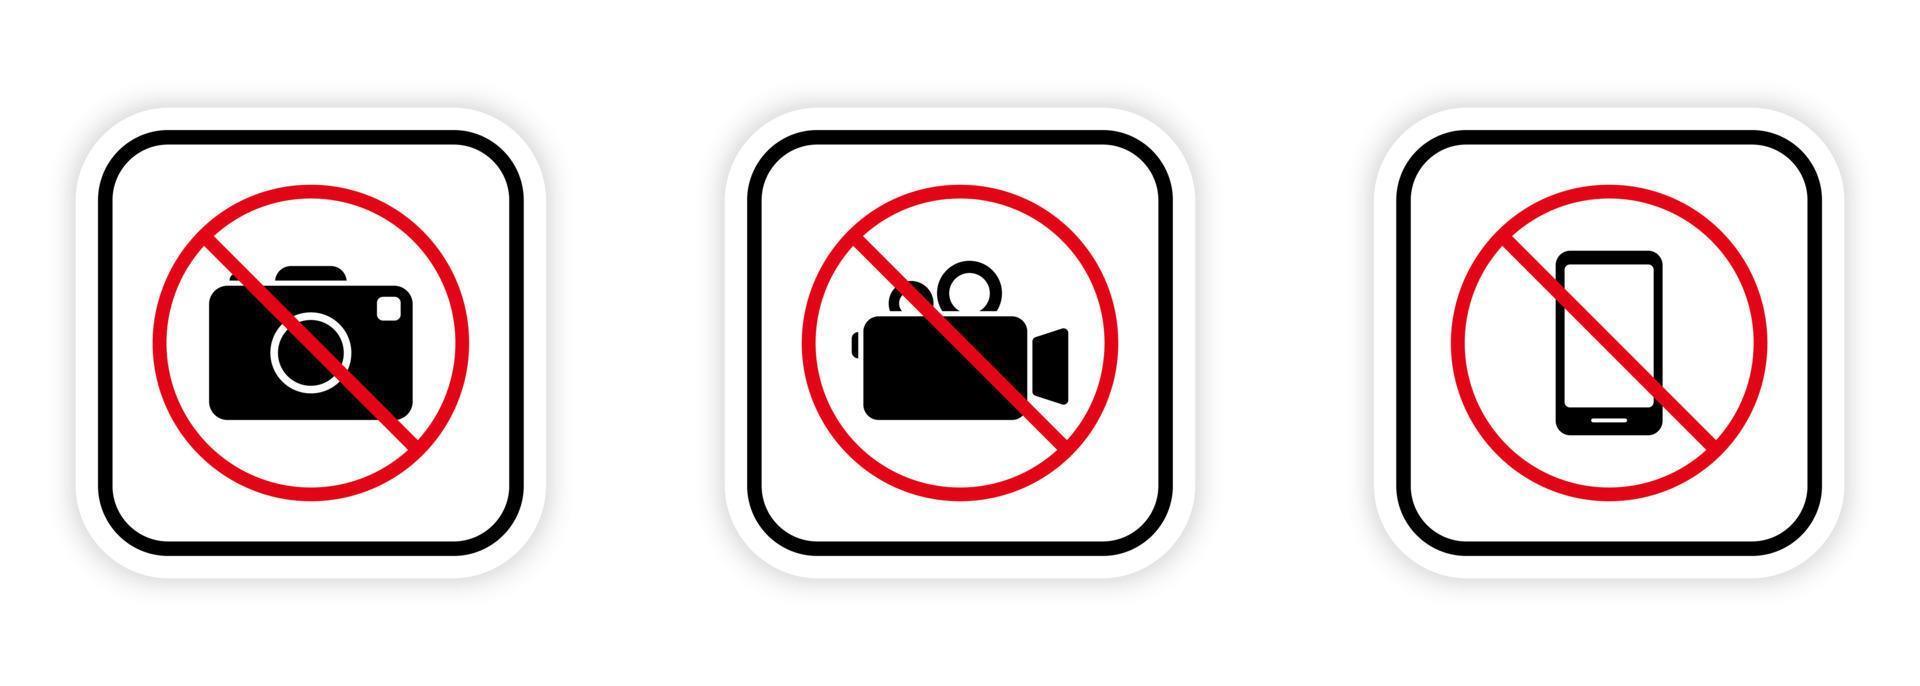 fotografering förbjudet område ikon. ingen video, fotokamera, mobiltelefon svart siluett förbud ikonuppsättning. kamera förbjuden. ej tillåten zon för inspelning av röd stoppsymbol. isolerade vektor illustration.